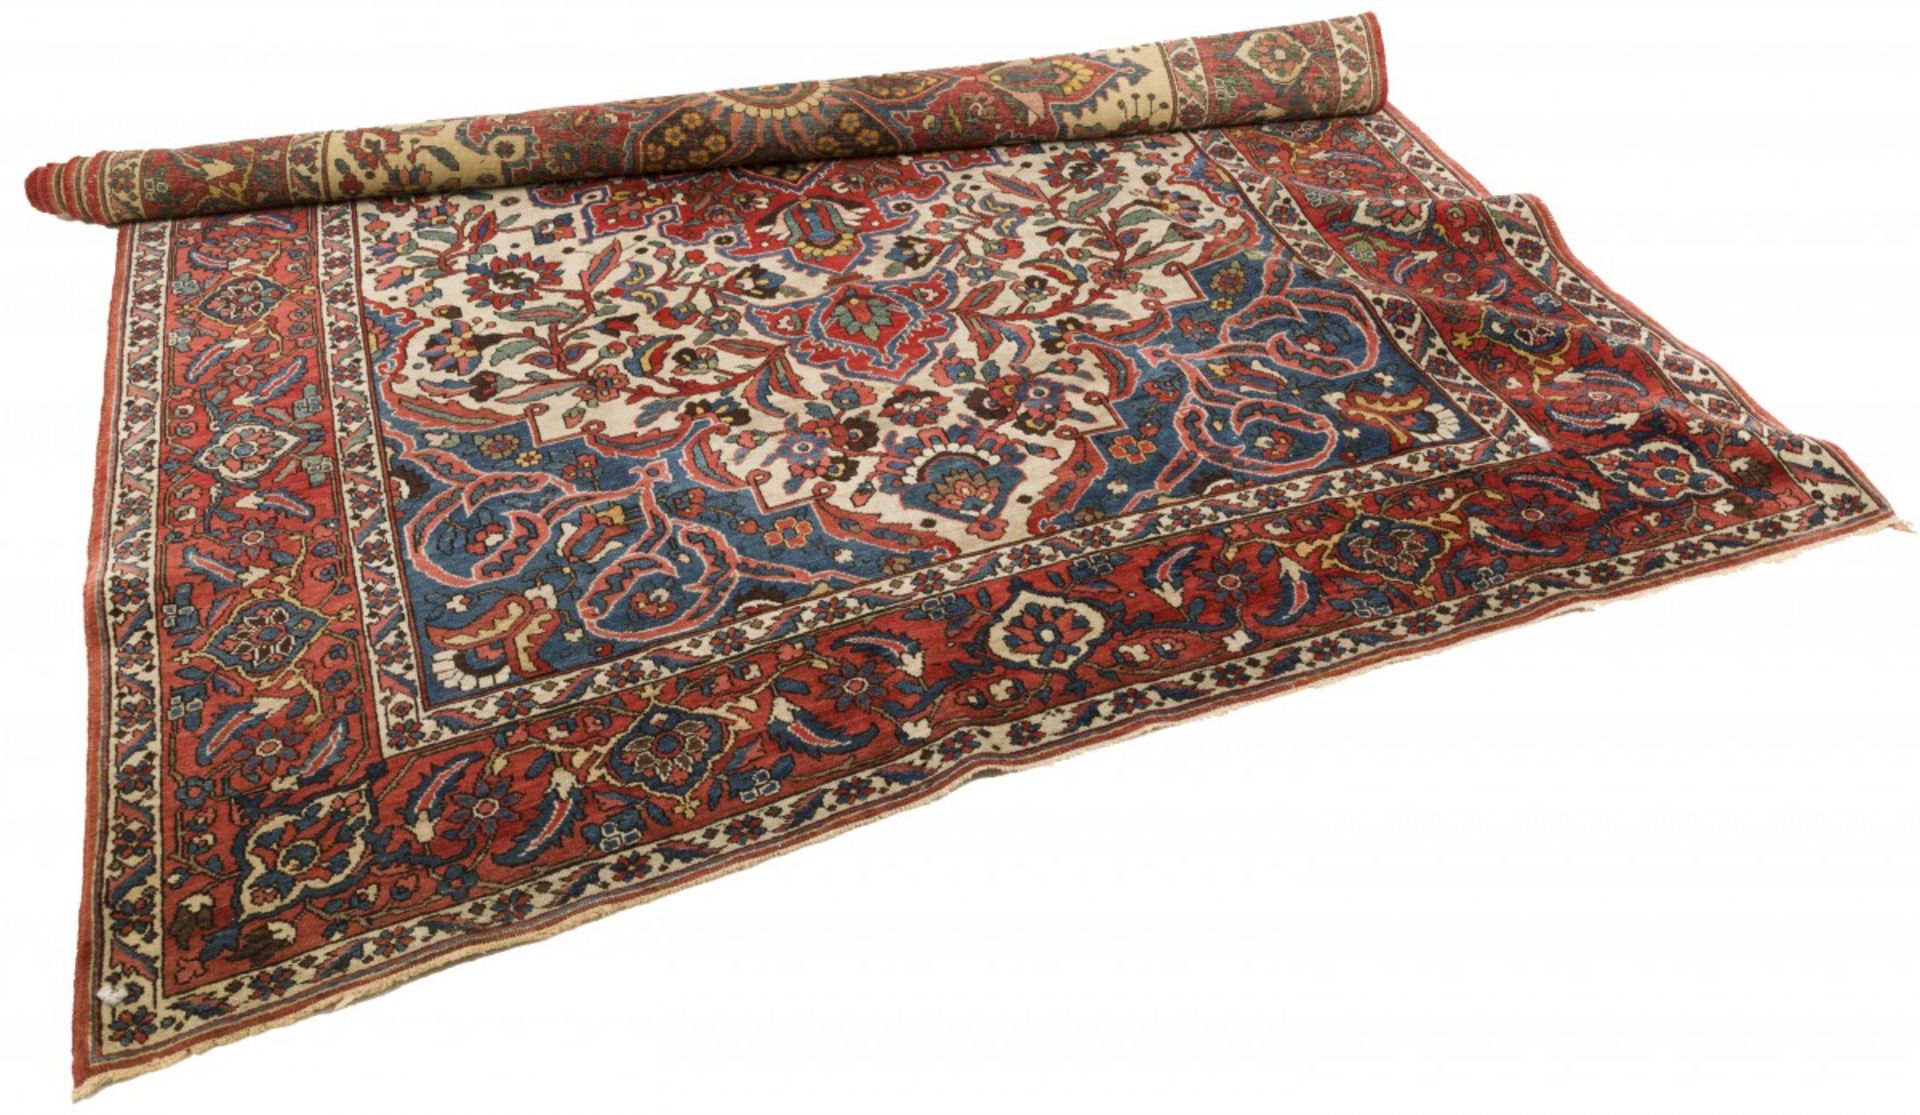 A Persian "Isphahan / Isfahan" carpet, Iran, 2nd half of the 20th century.